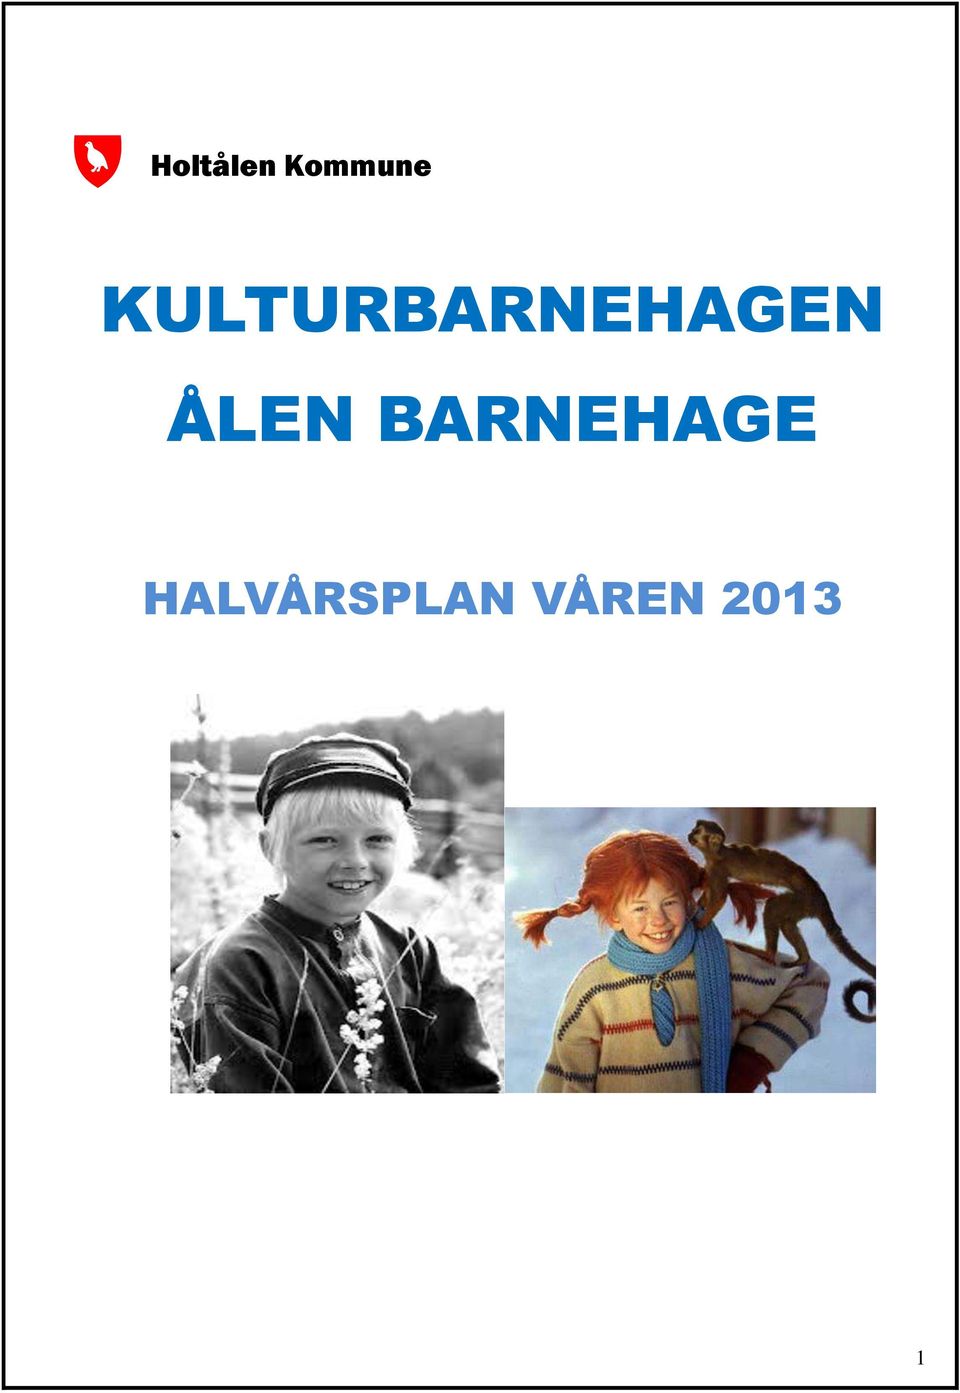 ÅLEN BARNEHAGE